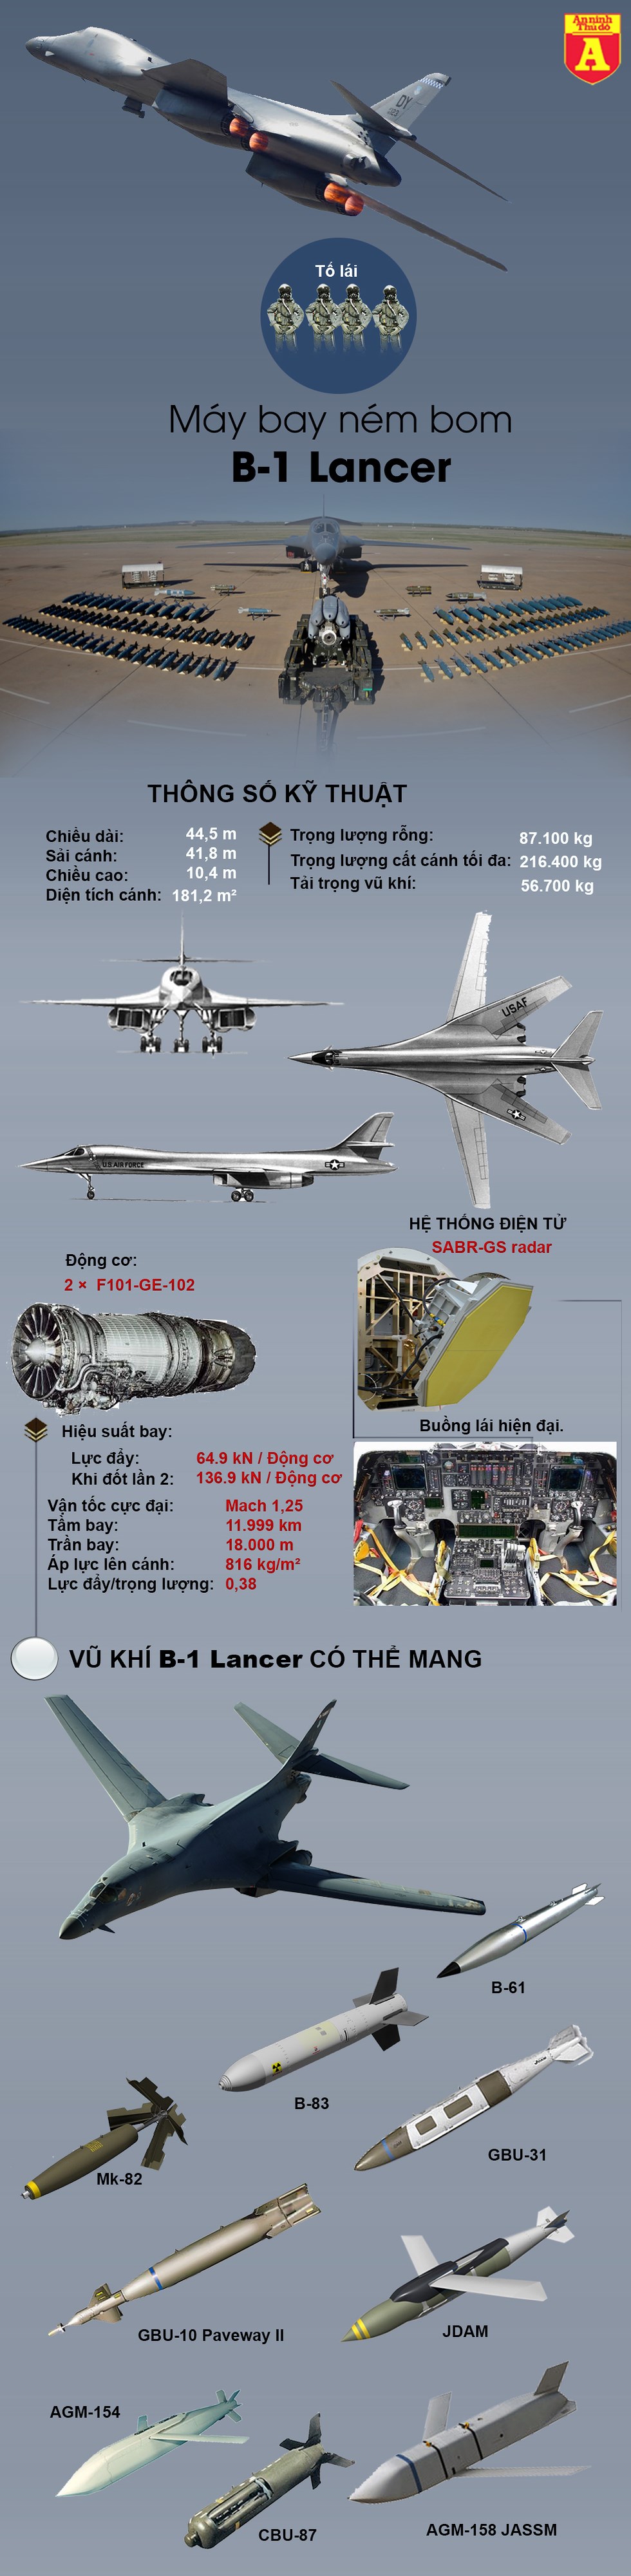 [Infographics] Bất ngờ "pháo đài bay" Mỹ có khả năng mang bom vượt trội "Thiên nga" Tu-160 Nga - Ảnh 1